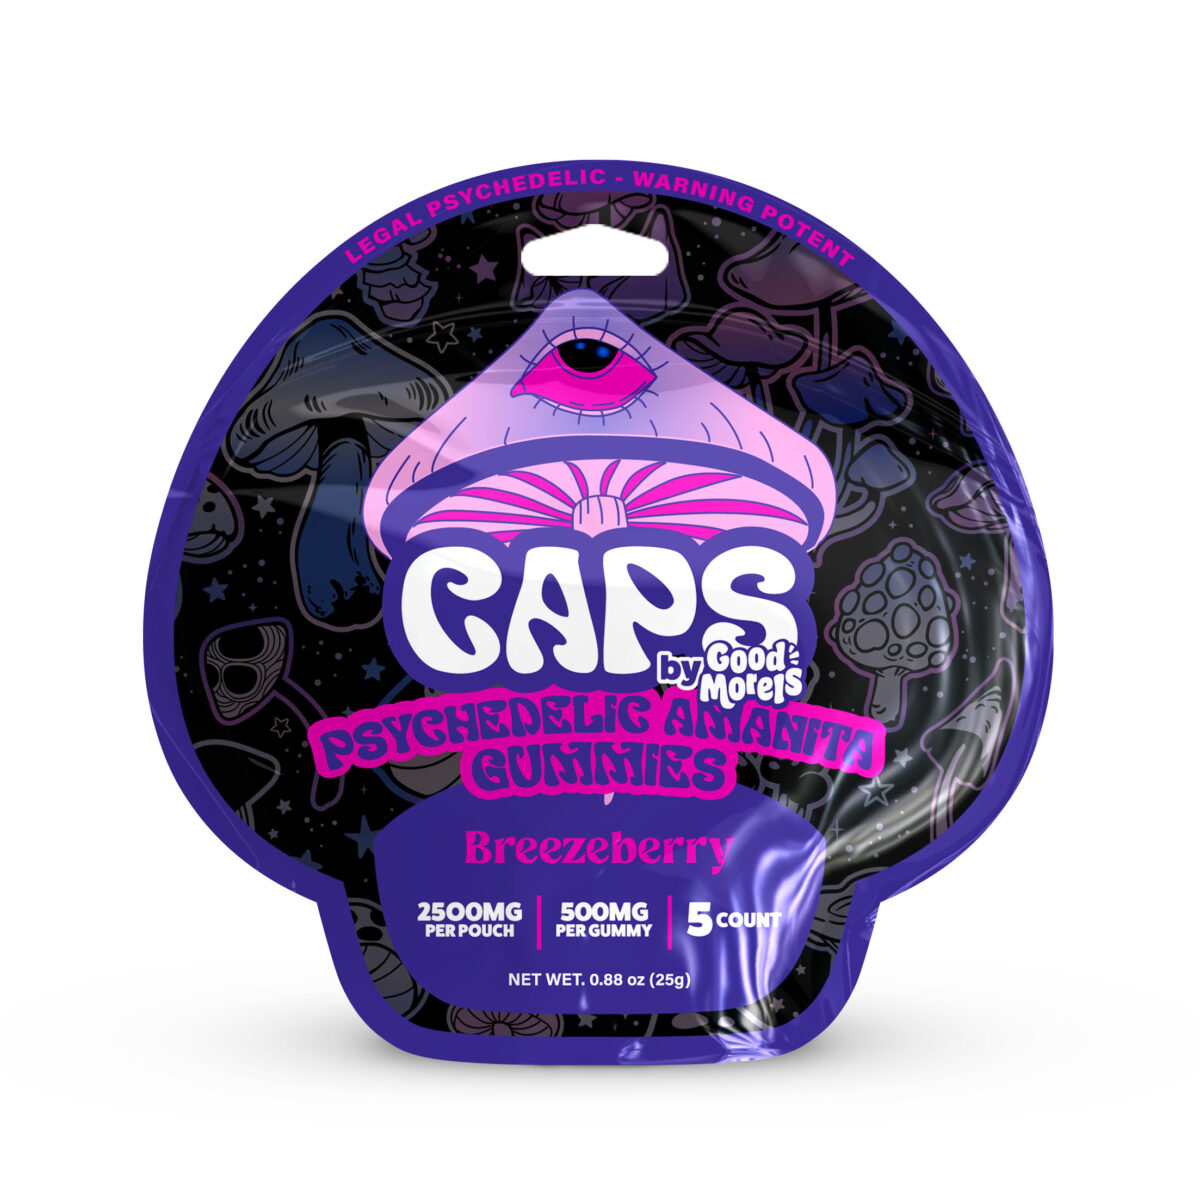 CAPS Mushroom Amanita Gummies Breezeberry – 5ct